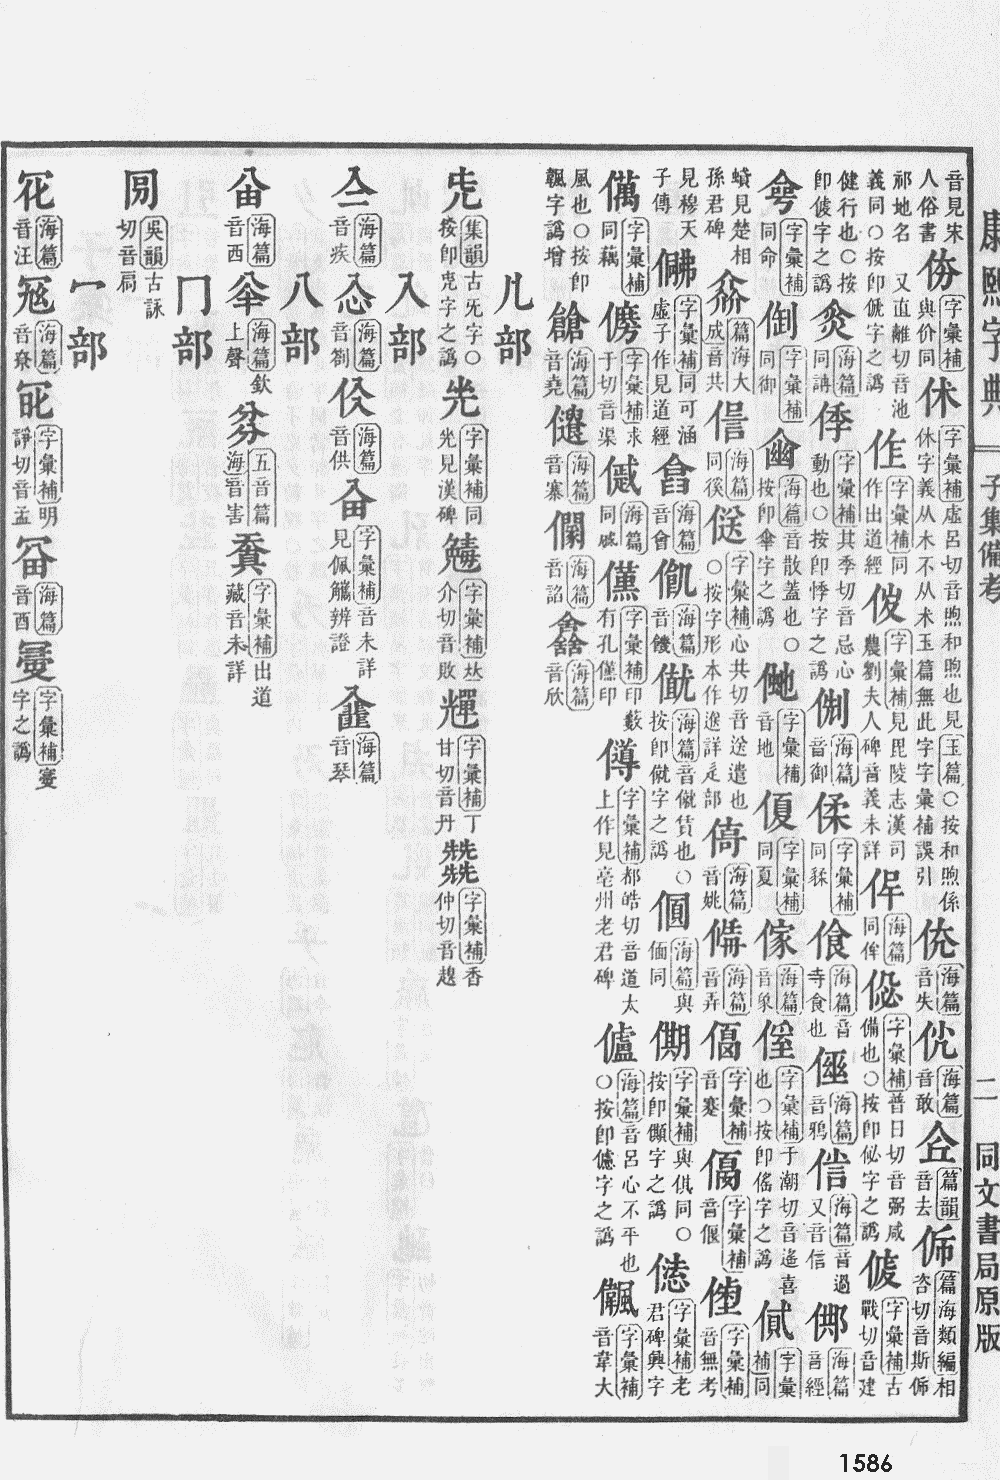 康熙字典掃描版第1586頁